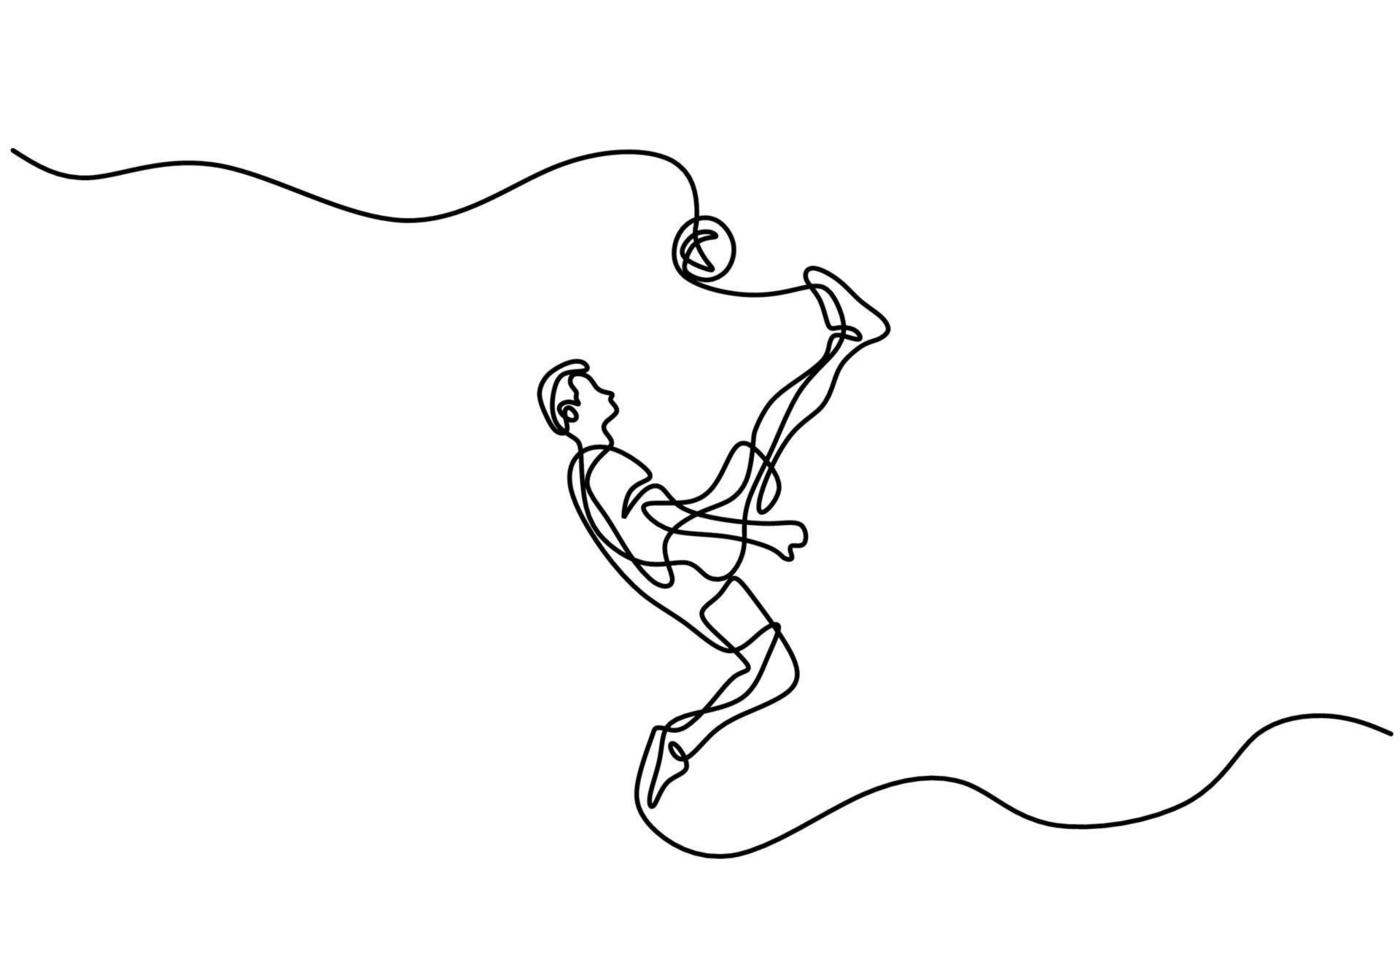 Um desenho de linha de um jovem jogador de futebol talentoso dá um chute  livre conceito esportivo de jogo de futebol